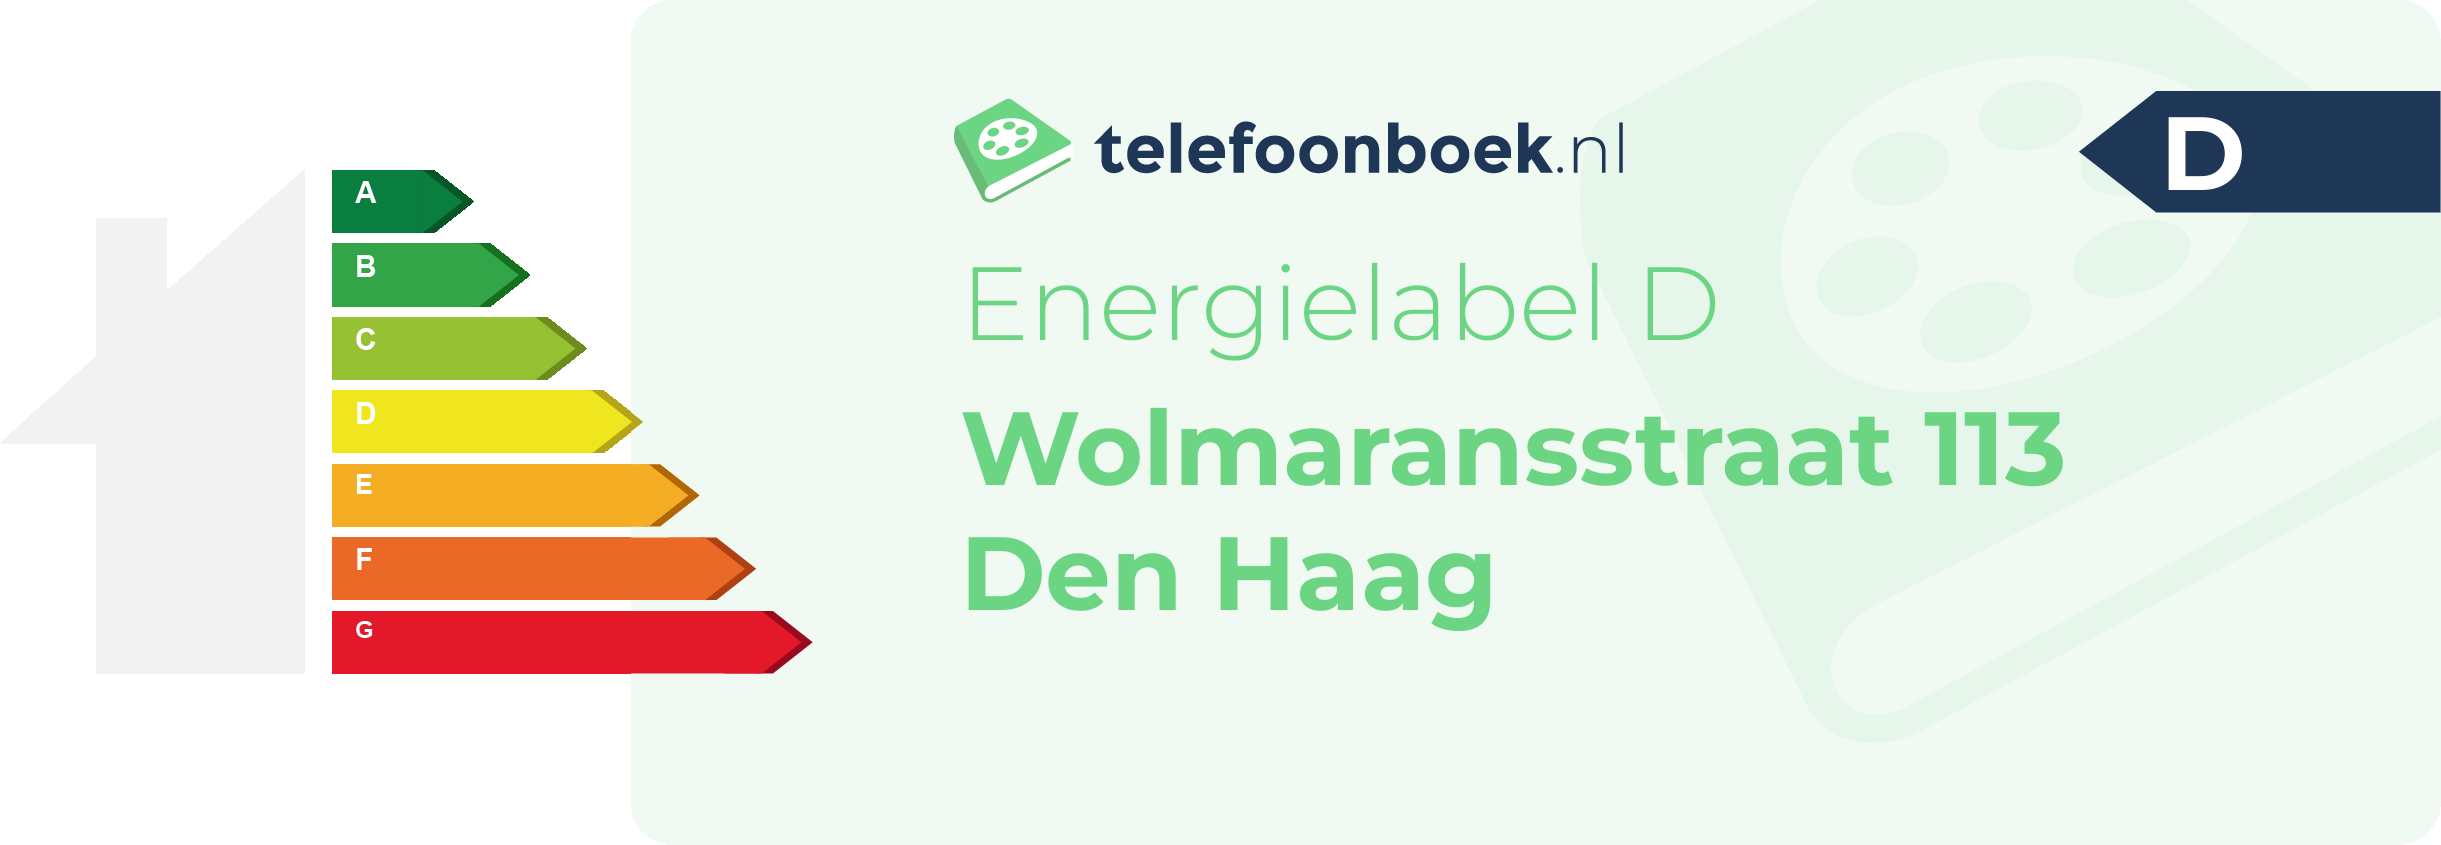 Energielabel Wolmaransstraat 113 Den Haag